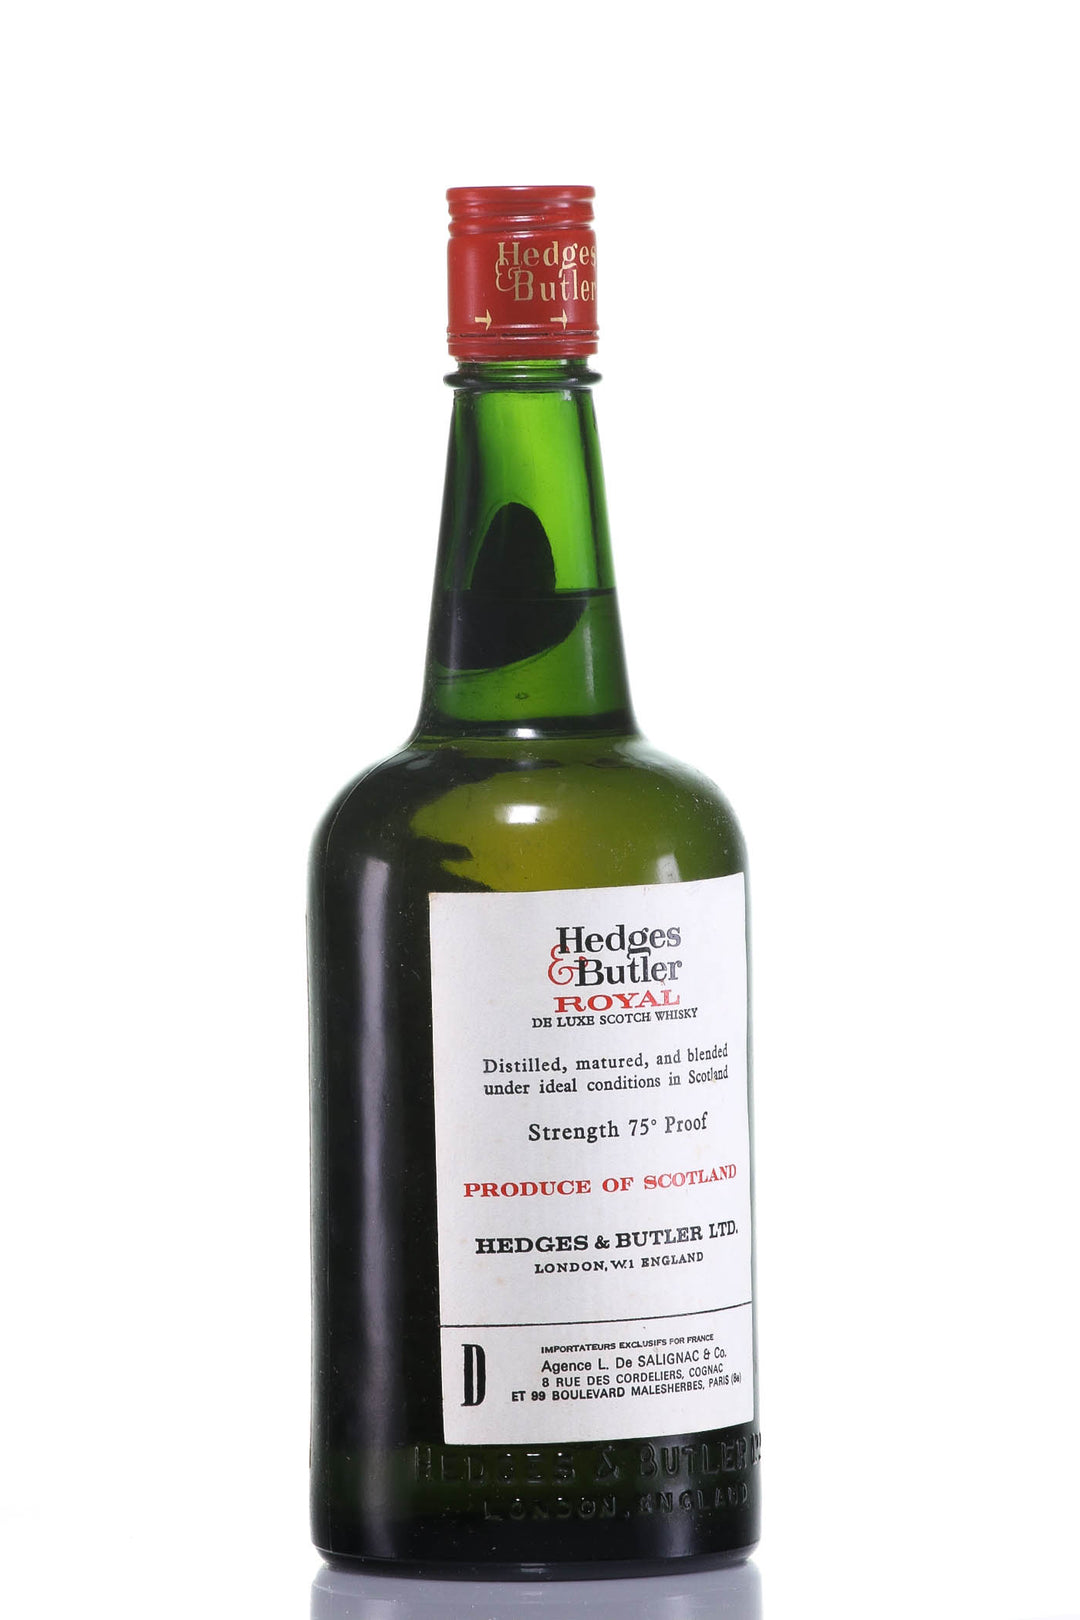 Hedges & Butler Royal De Luxe Blended Scotch Whisky, Scotland - legendaryvintages